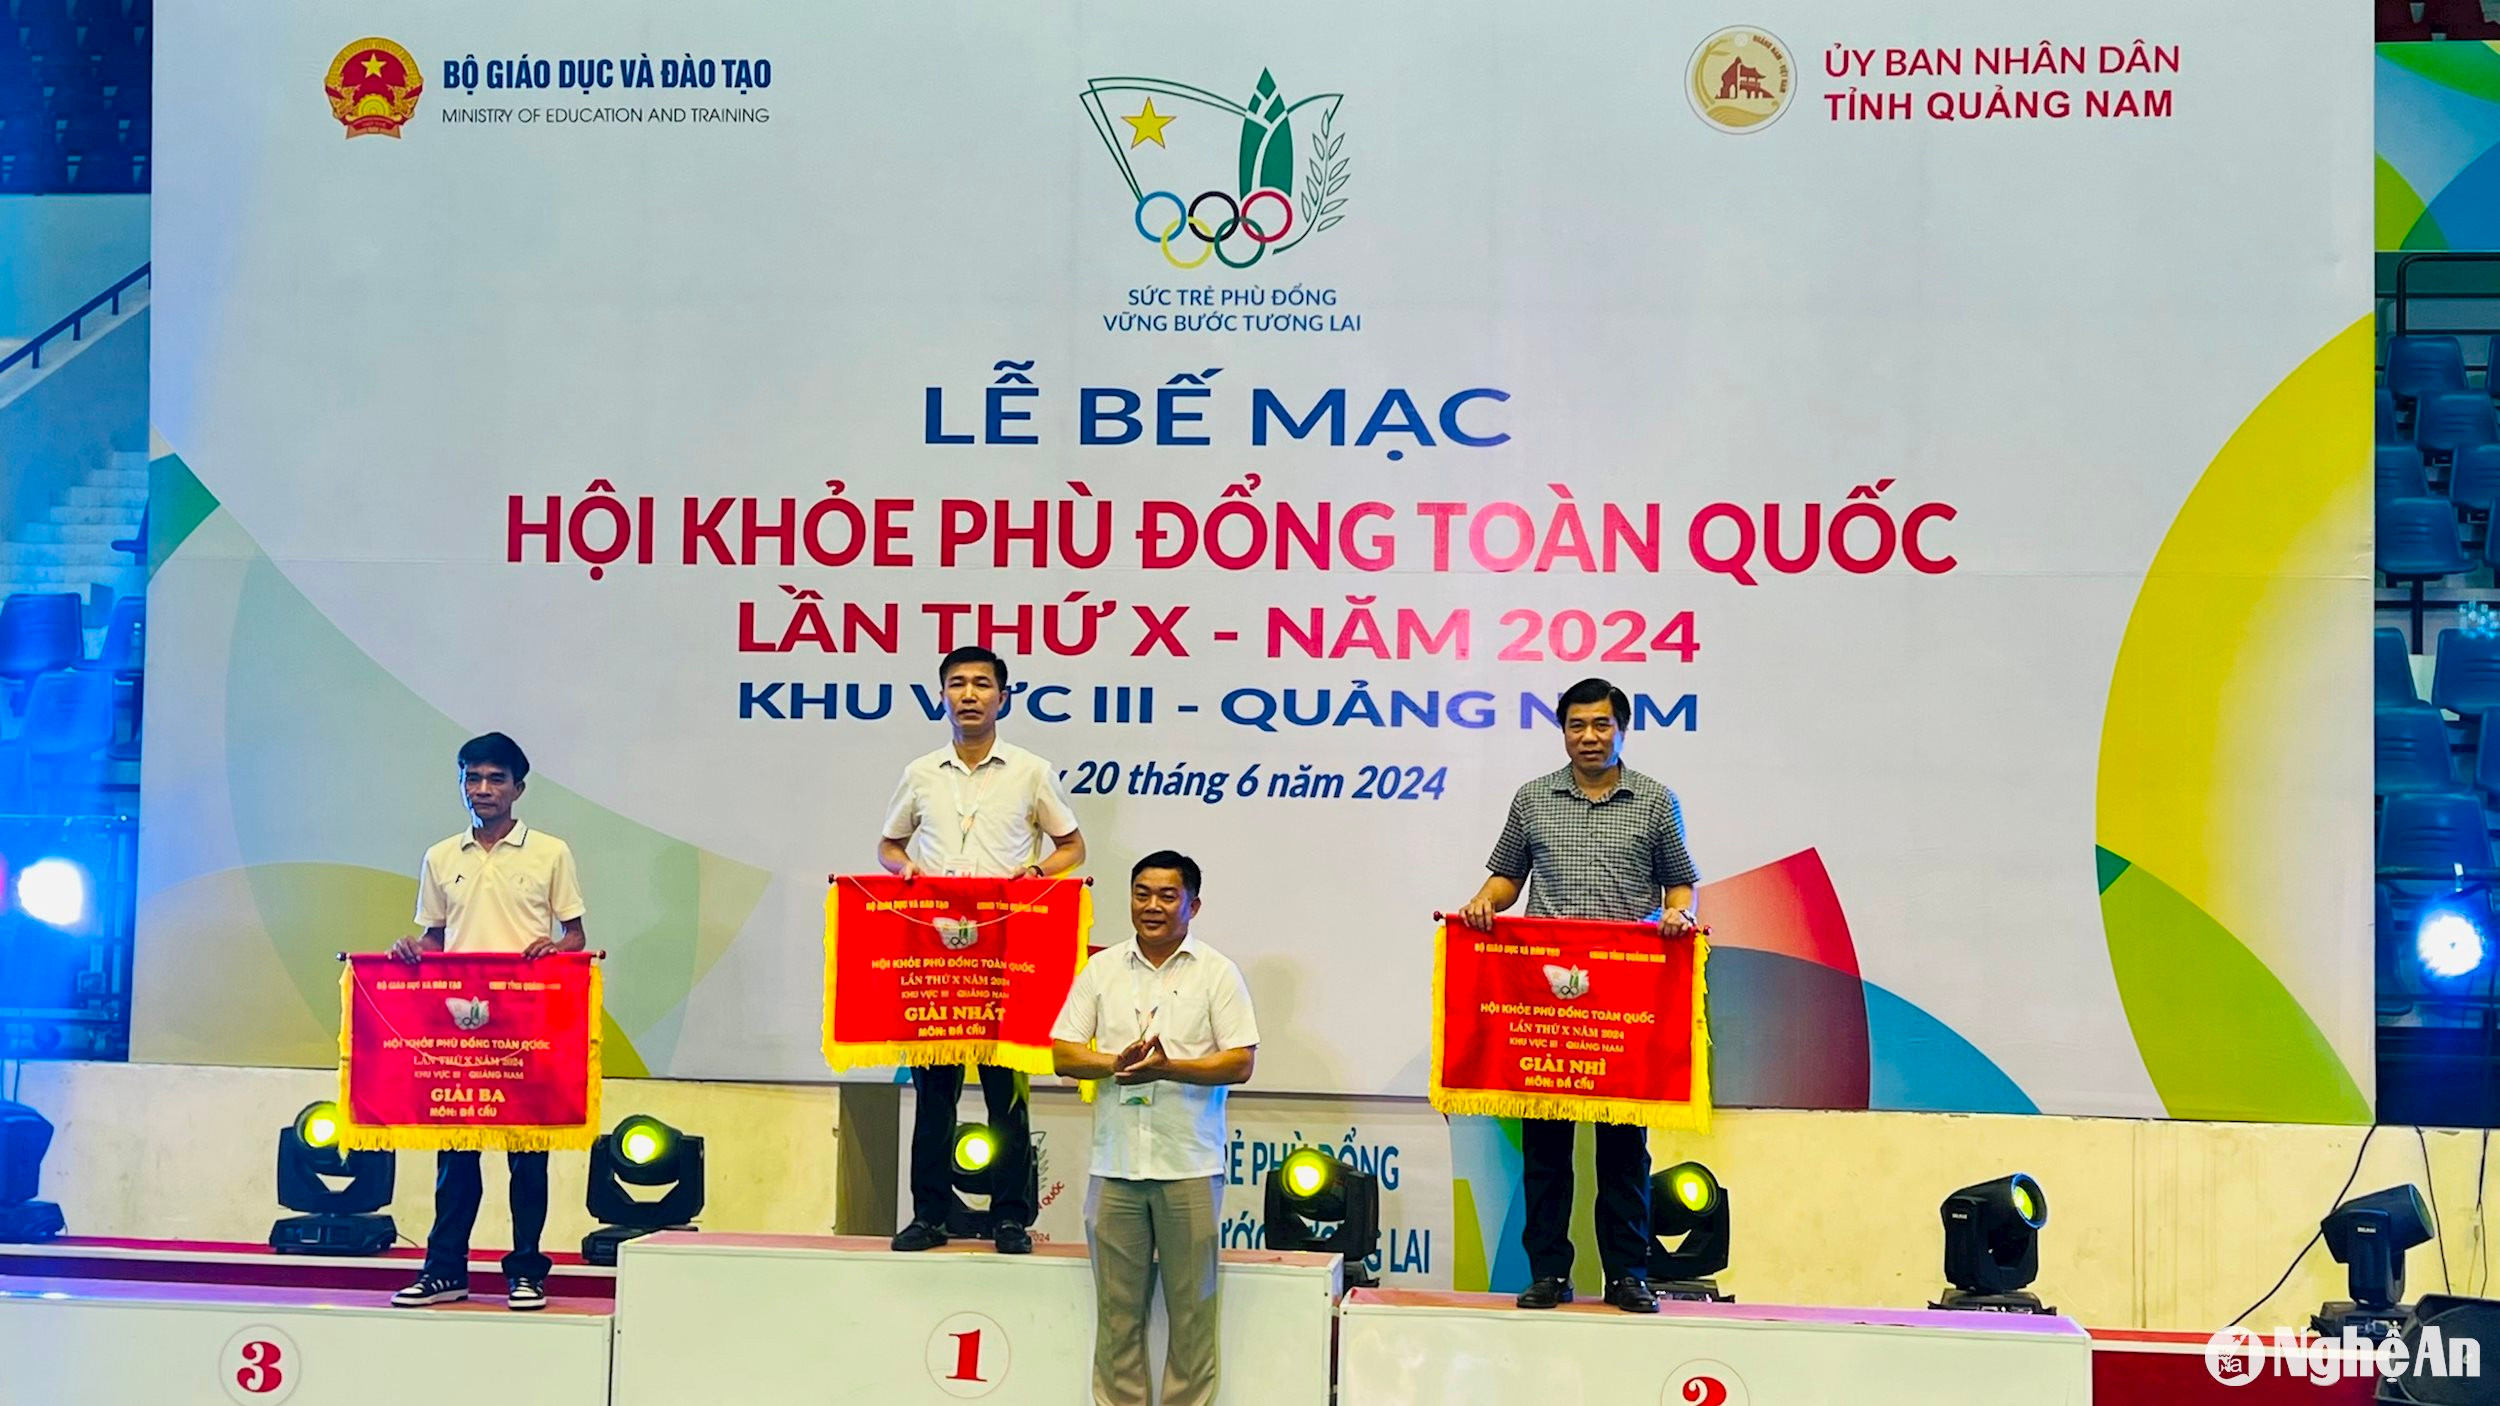 Đoàn vận động viên Nghệ An được trao giải Nhất toàn đoàn. Ảnh: Sở Giáo dục và Đào tạo